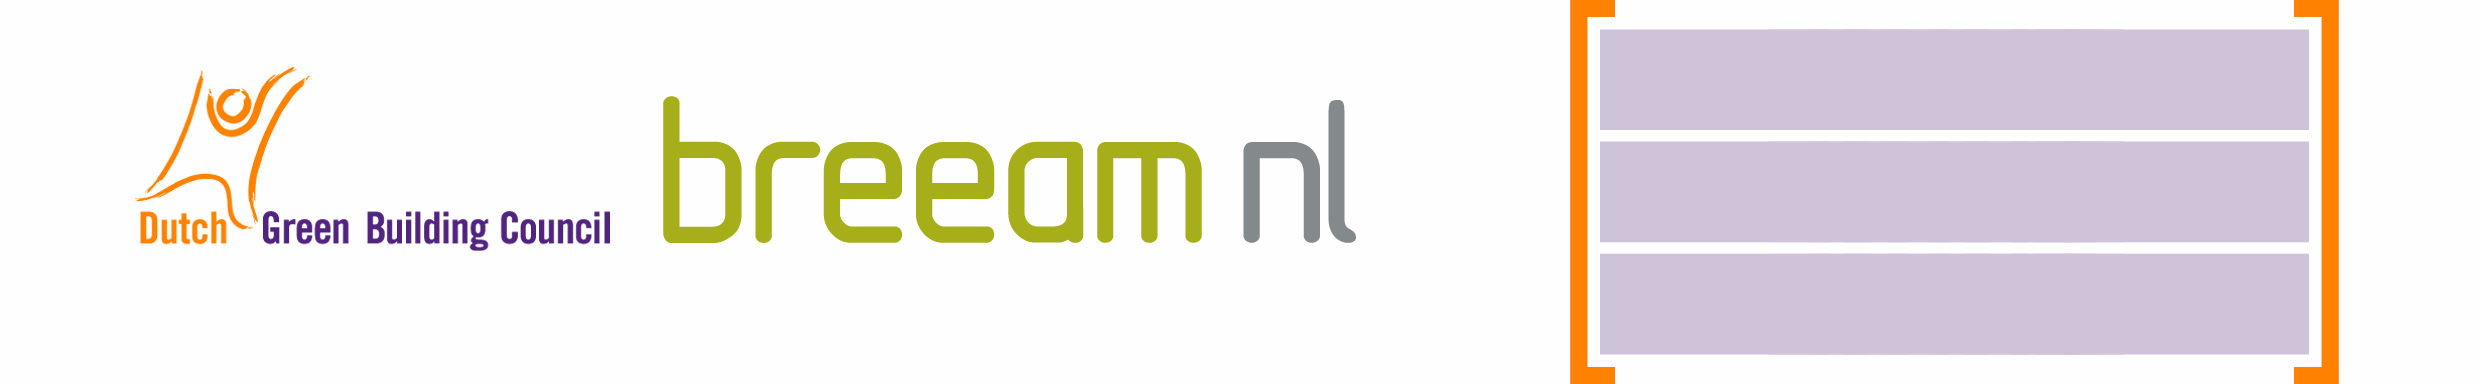 BREEAM-NL 2010 KEURMERK VOOR DUURZAME VASTGOEDOBJECTEN Beoordelingsrichtlijn Nieuwbouw Versie 1.